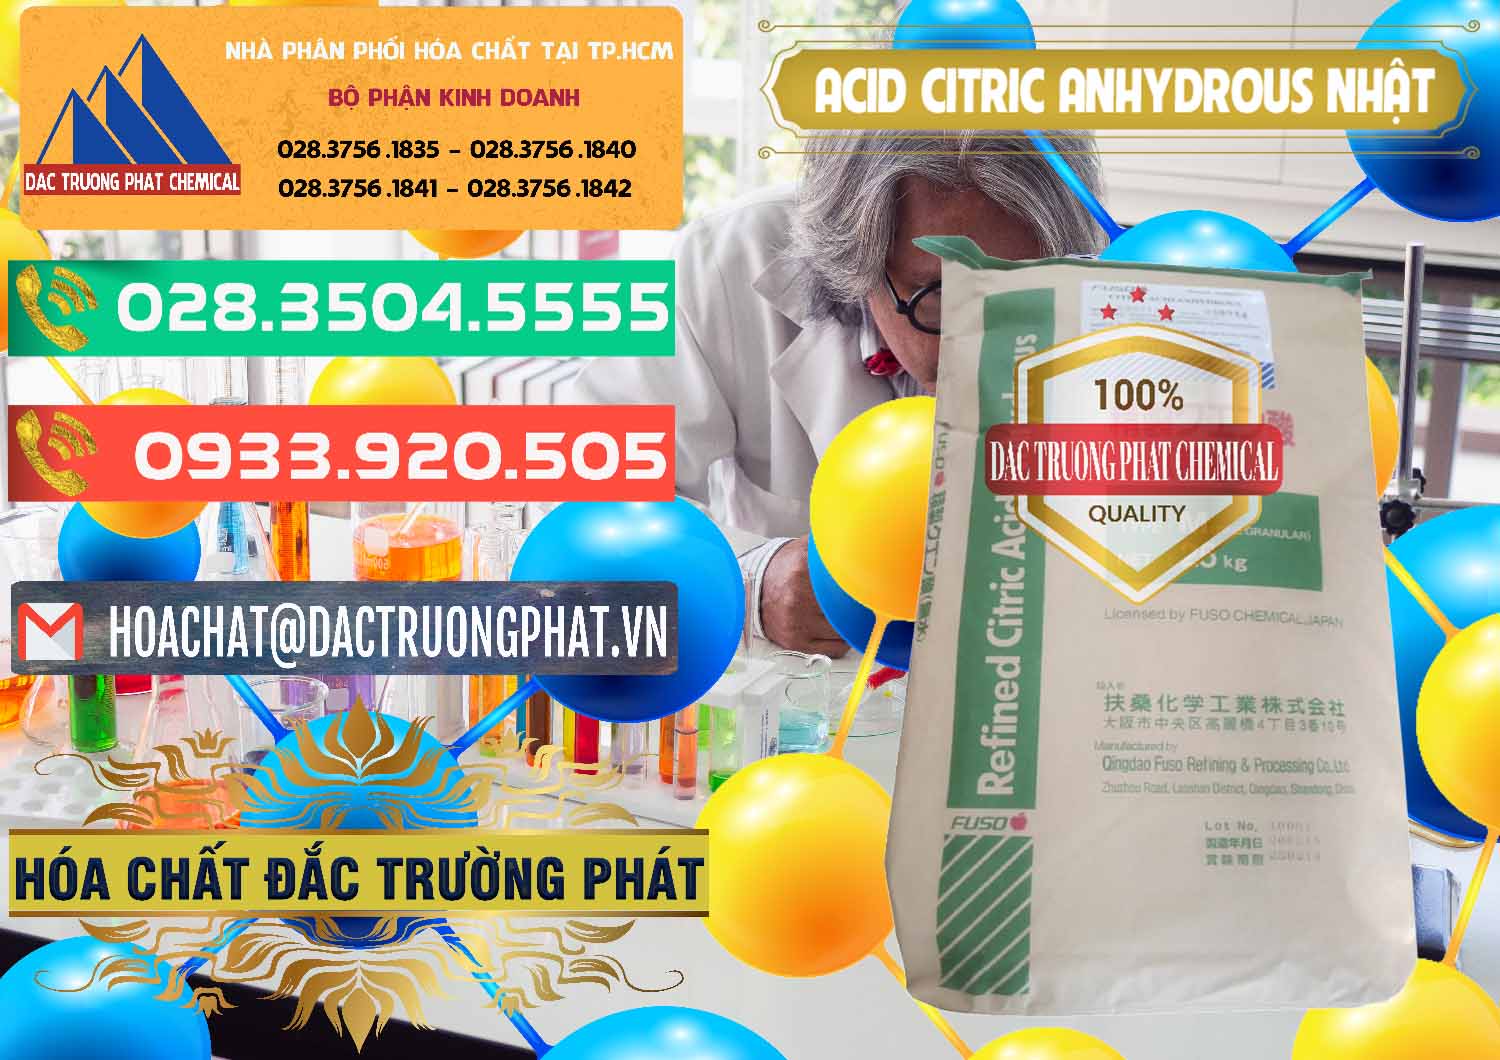 Nơi chuyên bán & cung cấp Acid Citric - Axit Citric Anhydrous FUSO Nhật Japan - 0439 - Chuyên phân phối và nhập khẩu hóa chất tại TP.HCM - congtyhoachat.com.vn